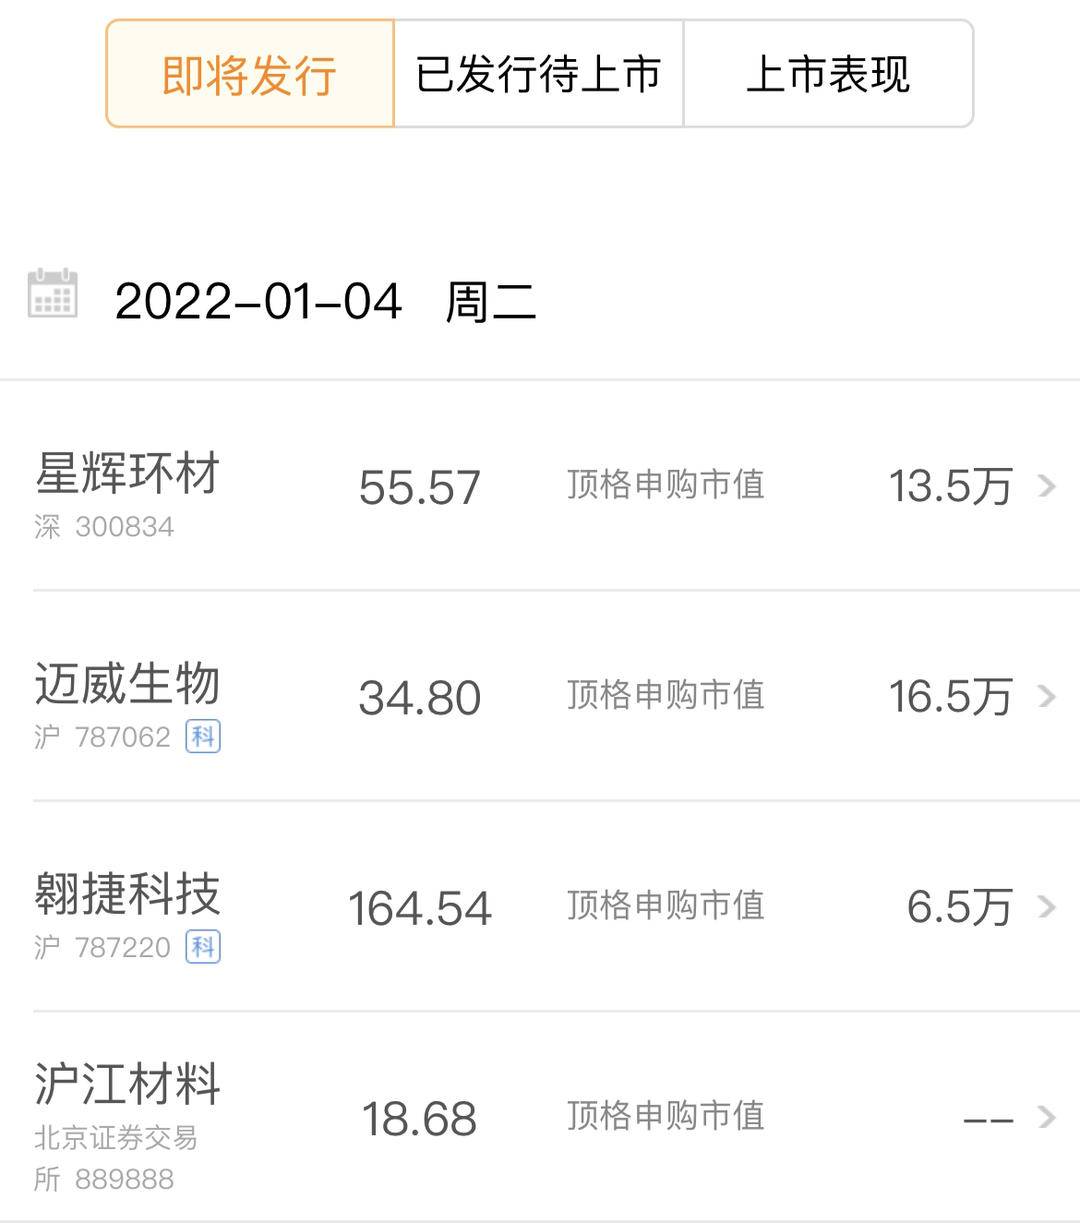 贵州茅台：预计2021年净利520亿元 同比增长11.3%